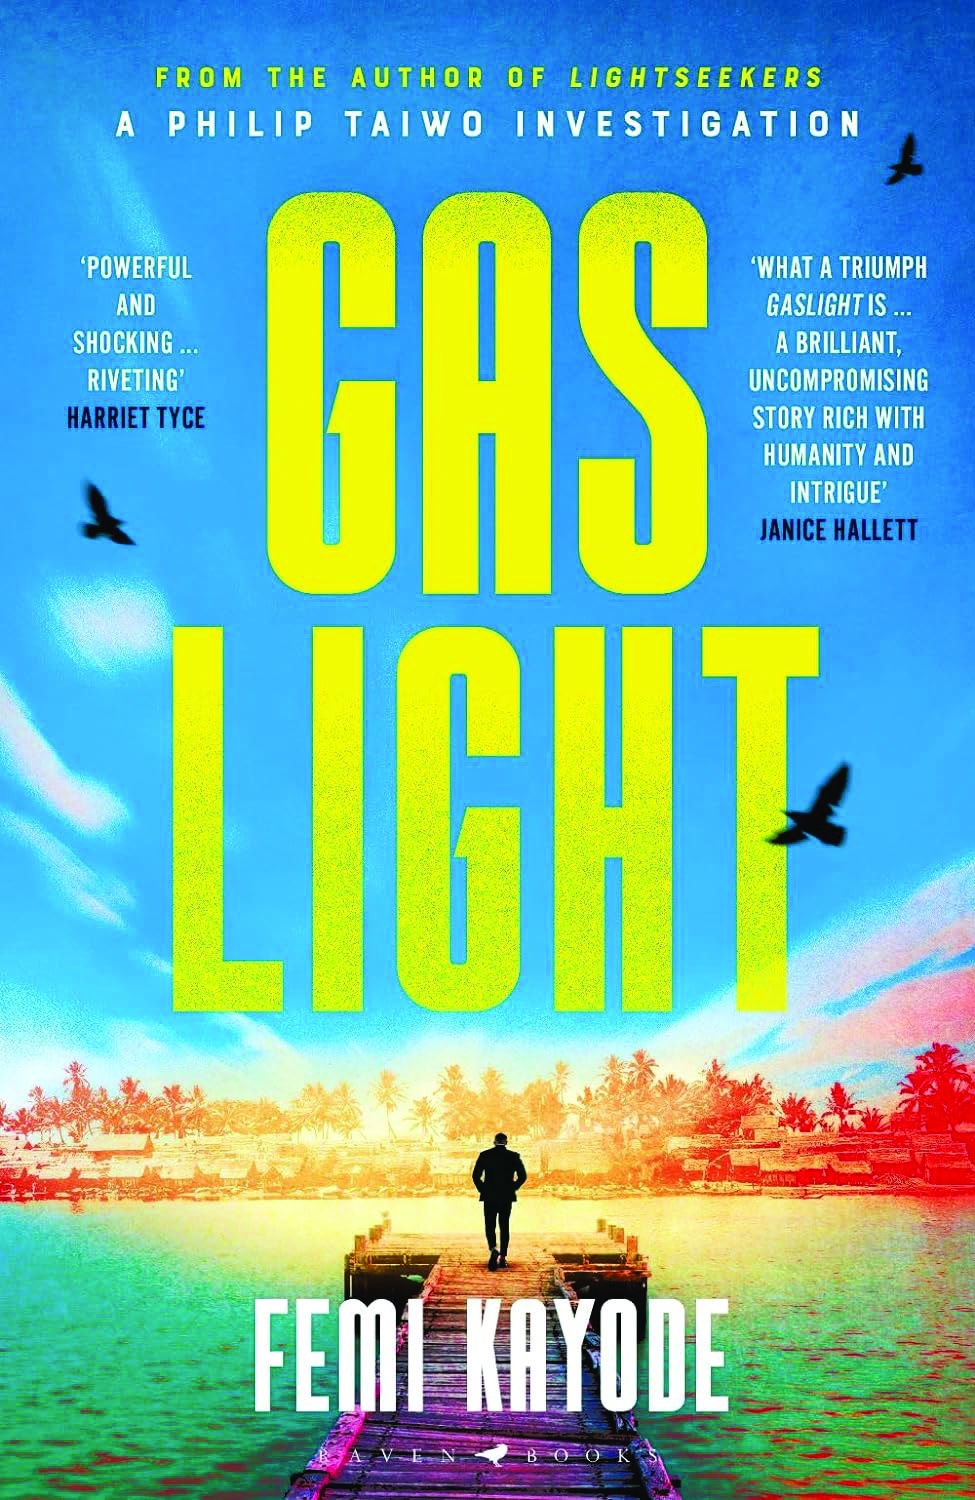 Gaslight book cover